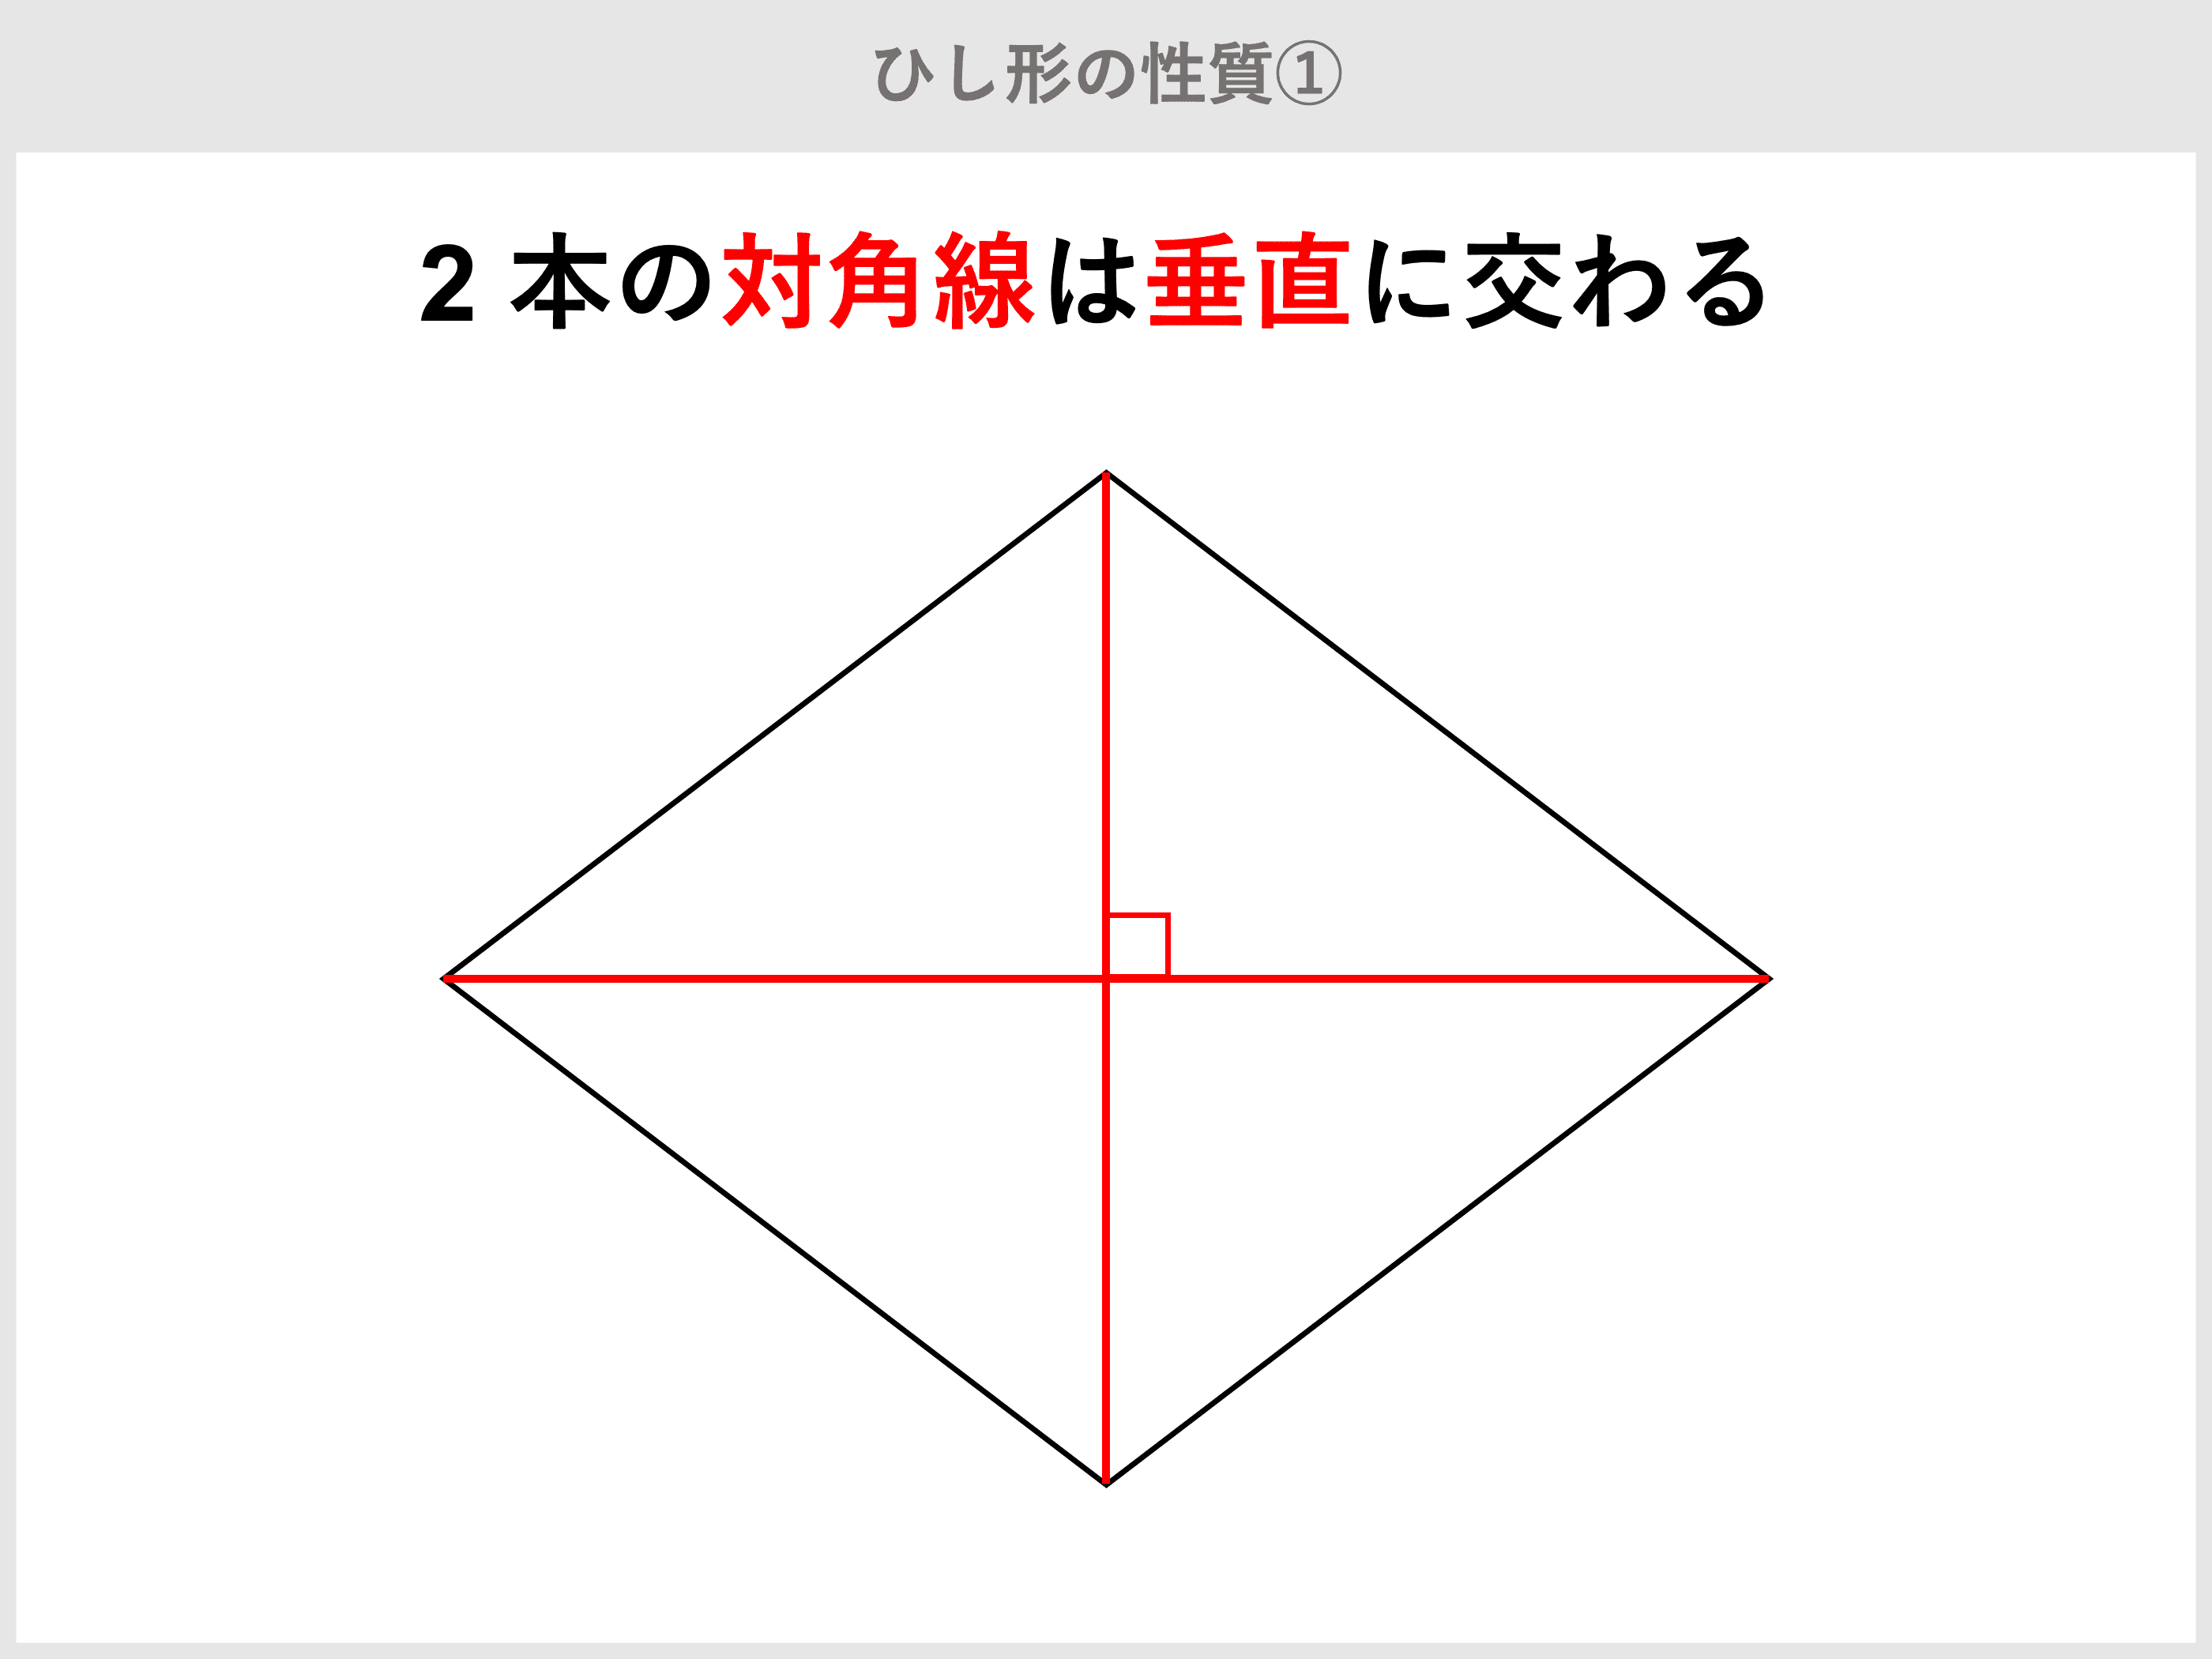 が 2 対角線 垂直 四角形 に 交わる 本 の